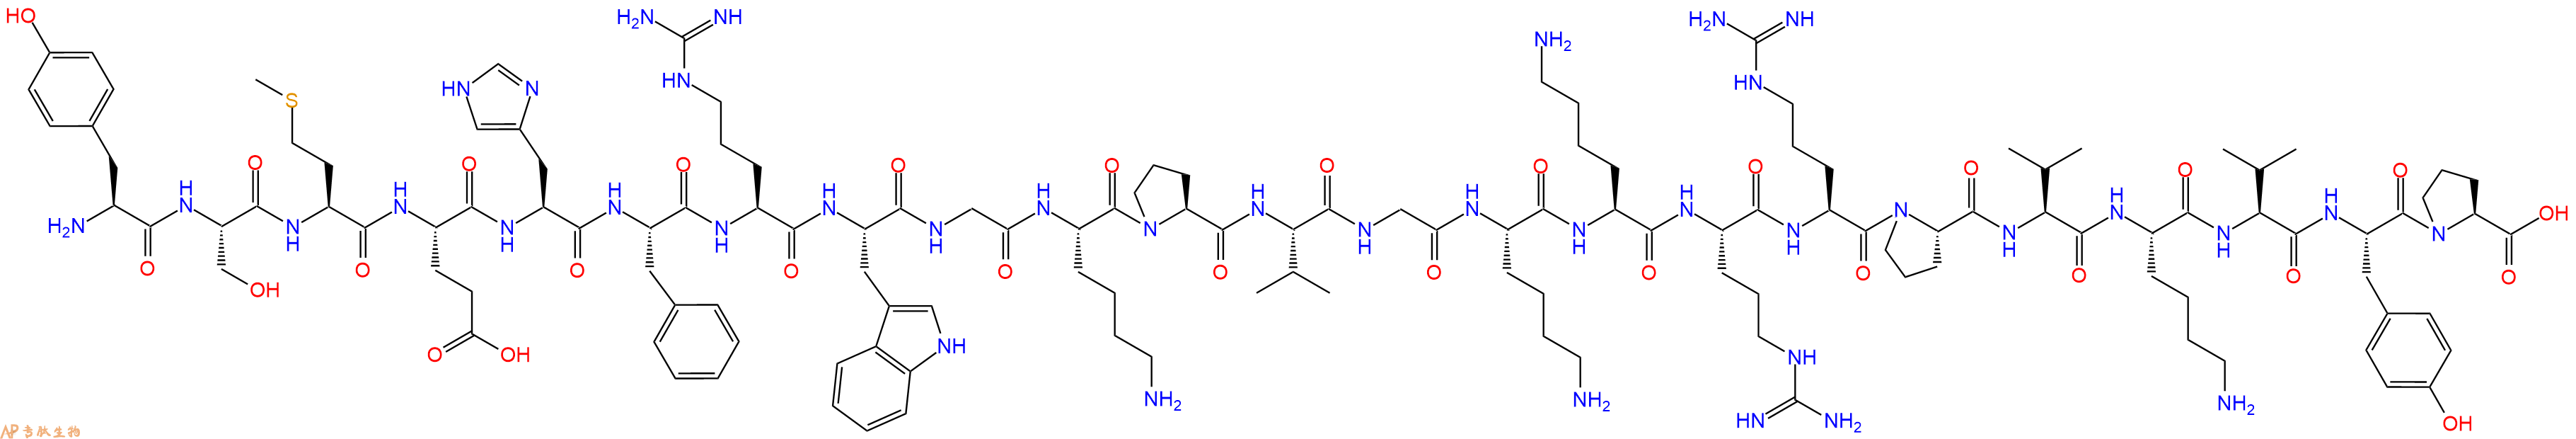 专肽生物产品促肾上腺皮质激素ACTH (2-24) (human, bovine, rat)67654-32-4